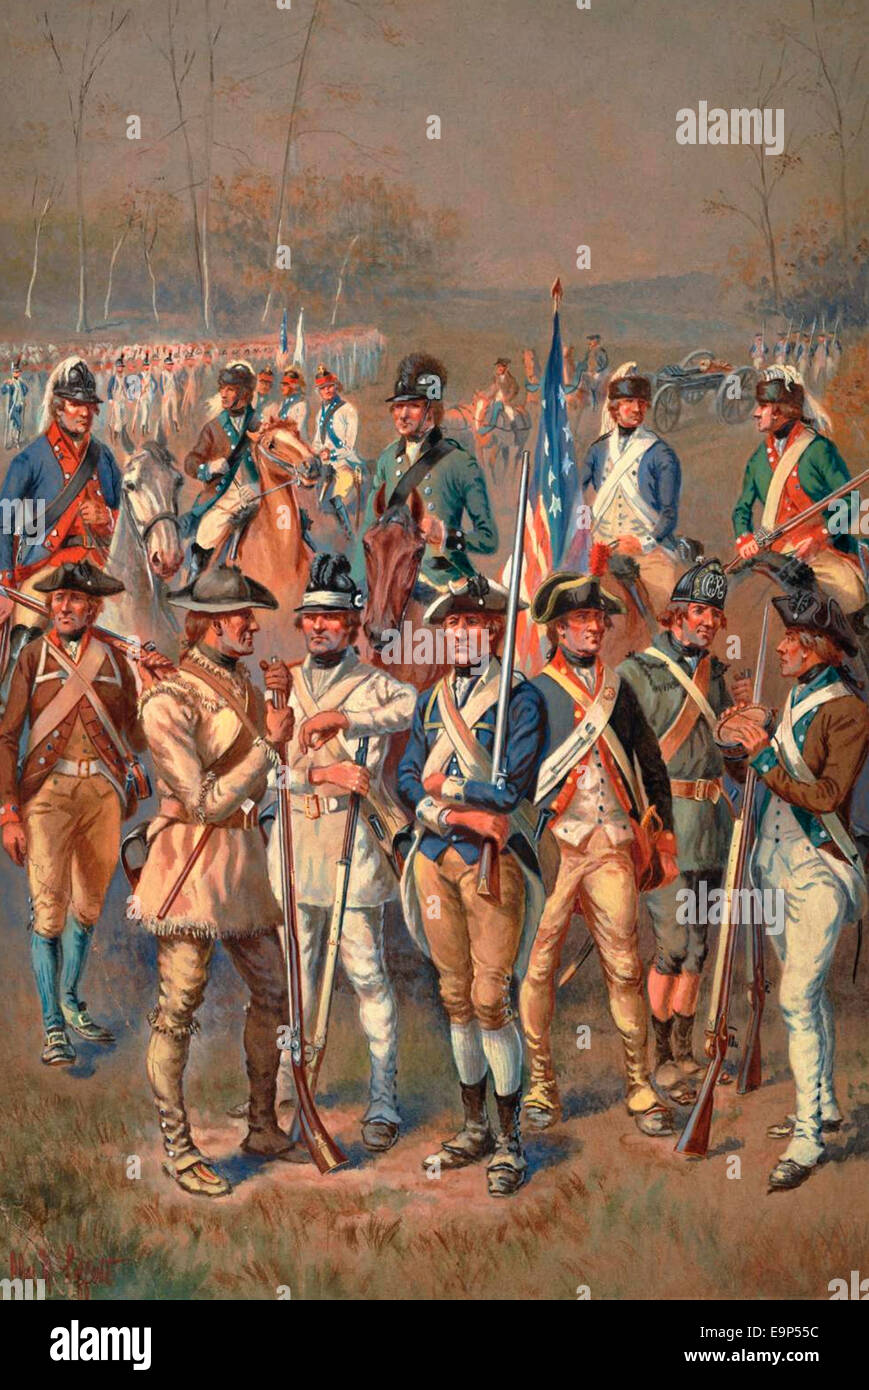 Ein Aquarell Gemälde, eine Vielzahl von Continental Army Soldaten, USA Unabhängigkeitskrieg. Stockfoto